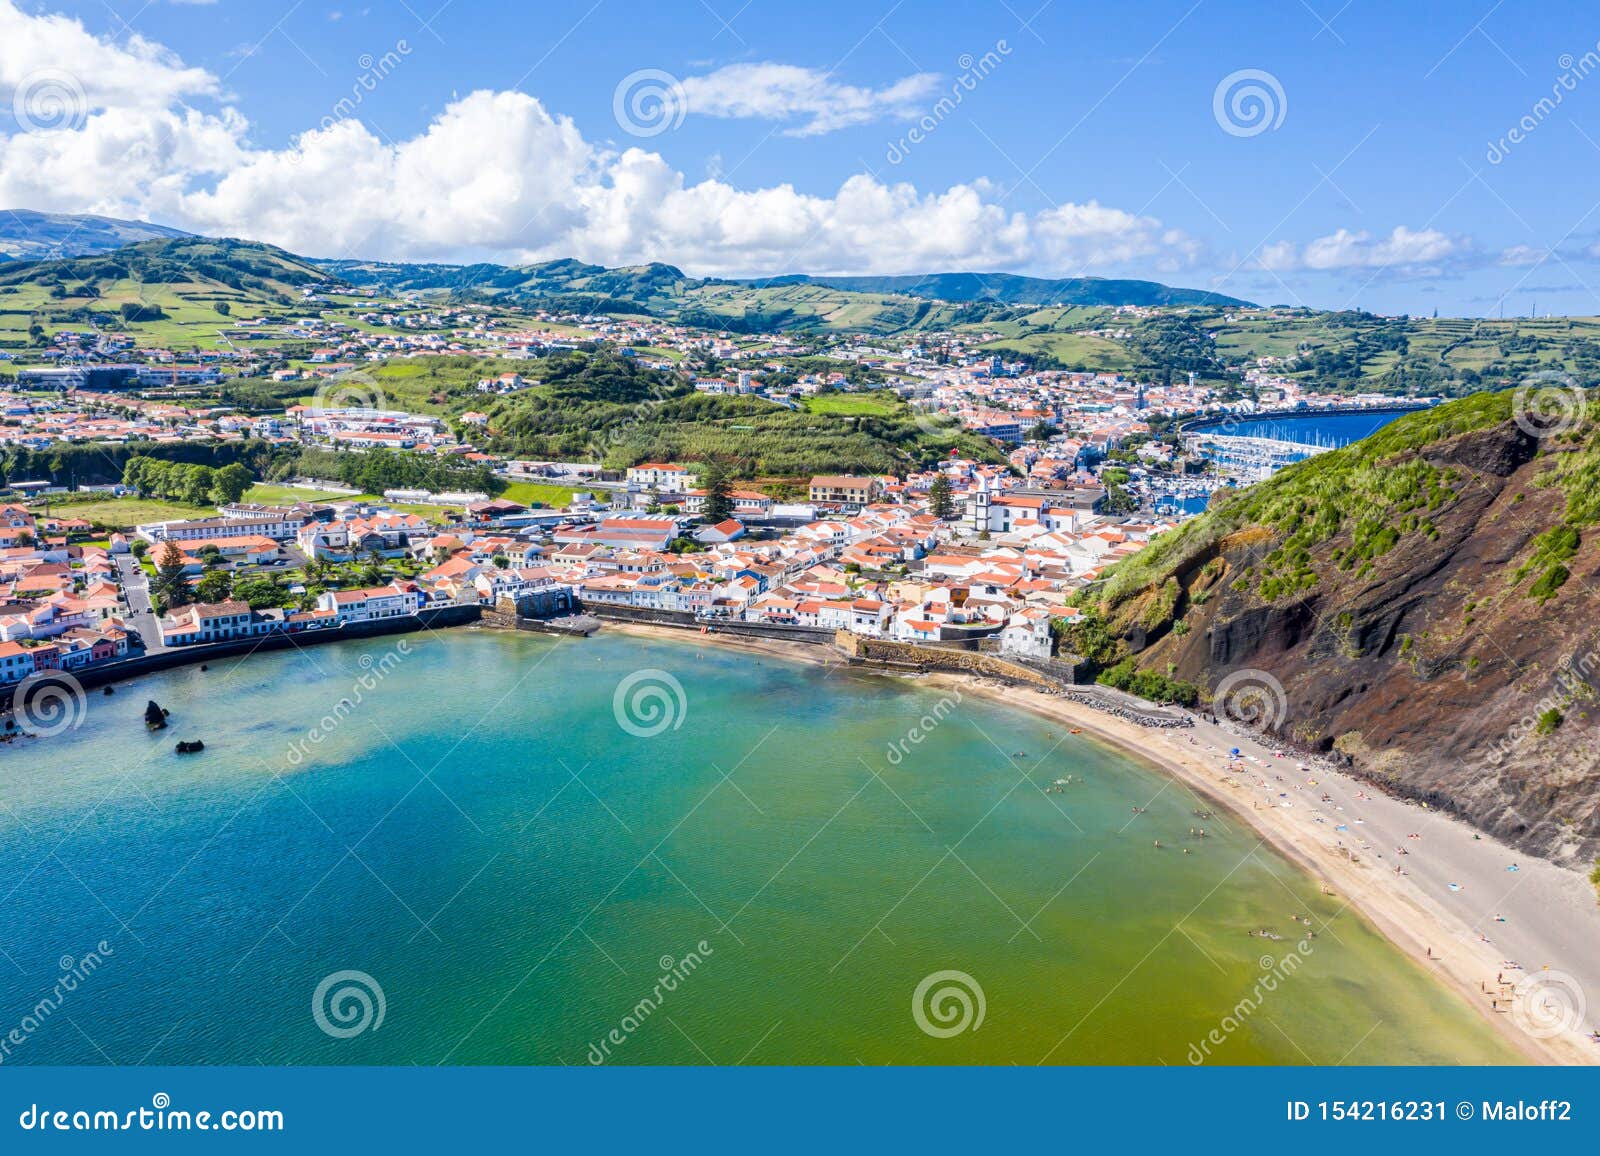 gates portao, idyllic beach praia and azure turquoise baia do porto pim, horta town, faial island, azores, portugal.